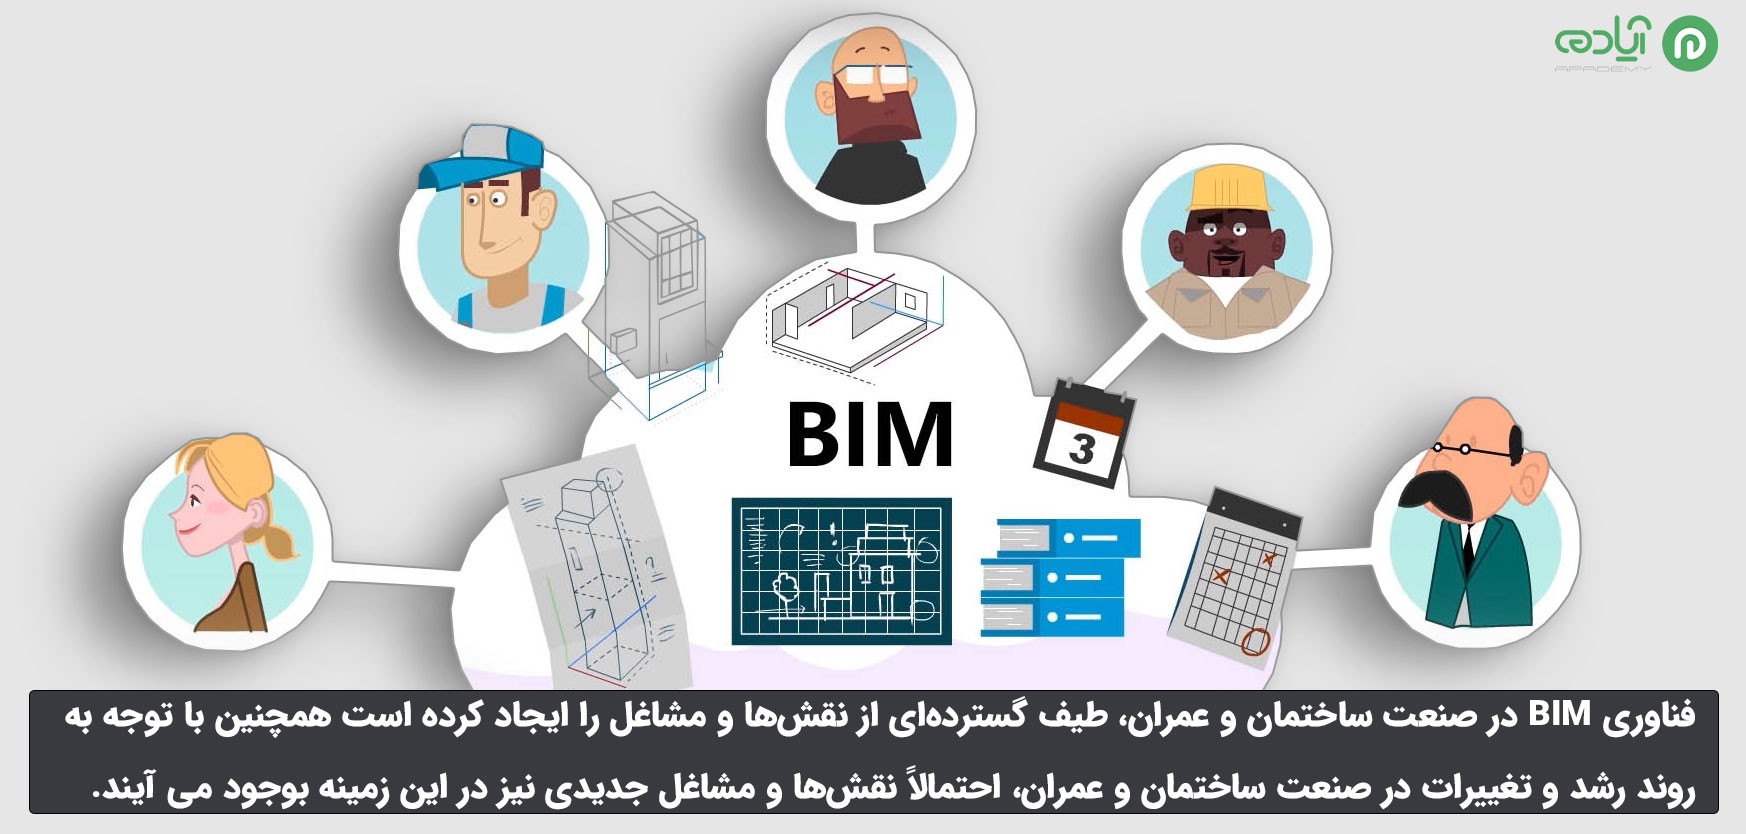 نقش ها و مشاغل مختلف در زمینه BIM